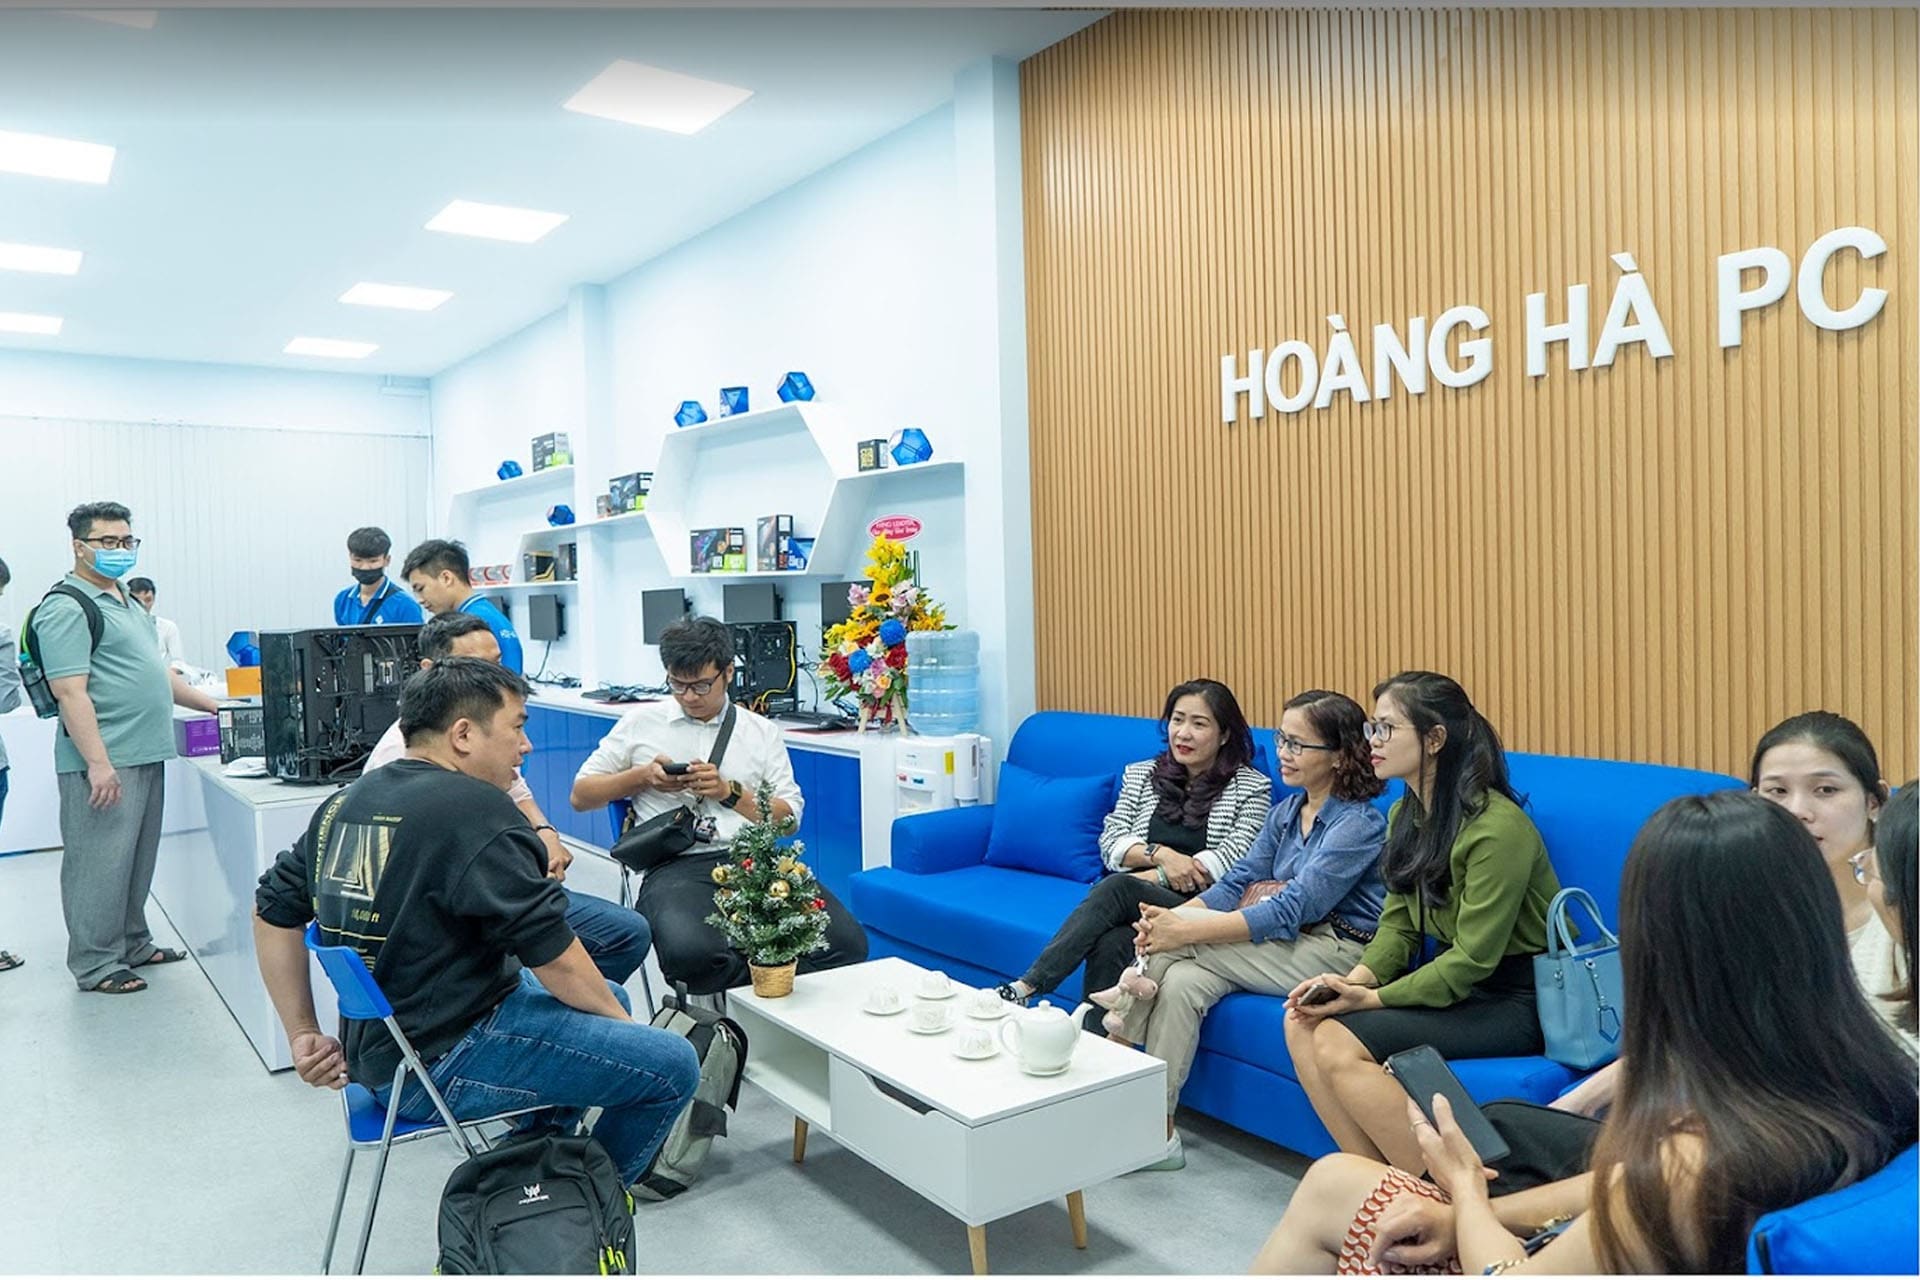 Showroom Hoàng Hà PC Hồ Chí Minh